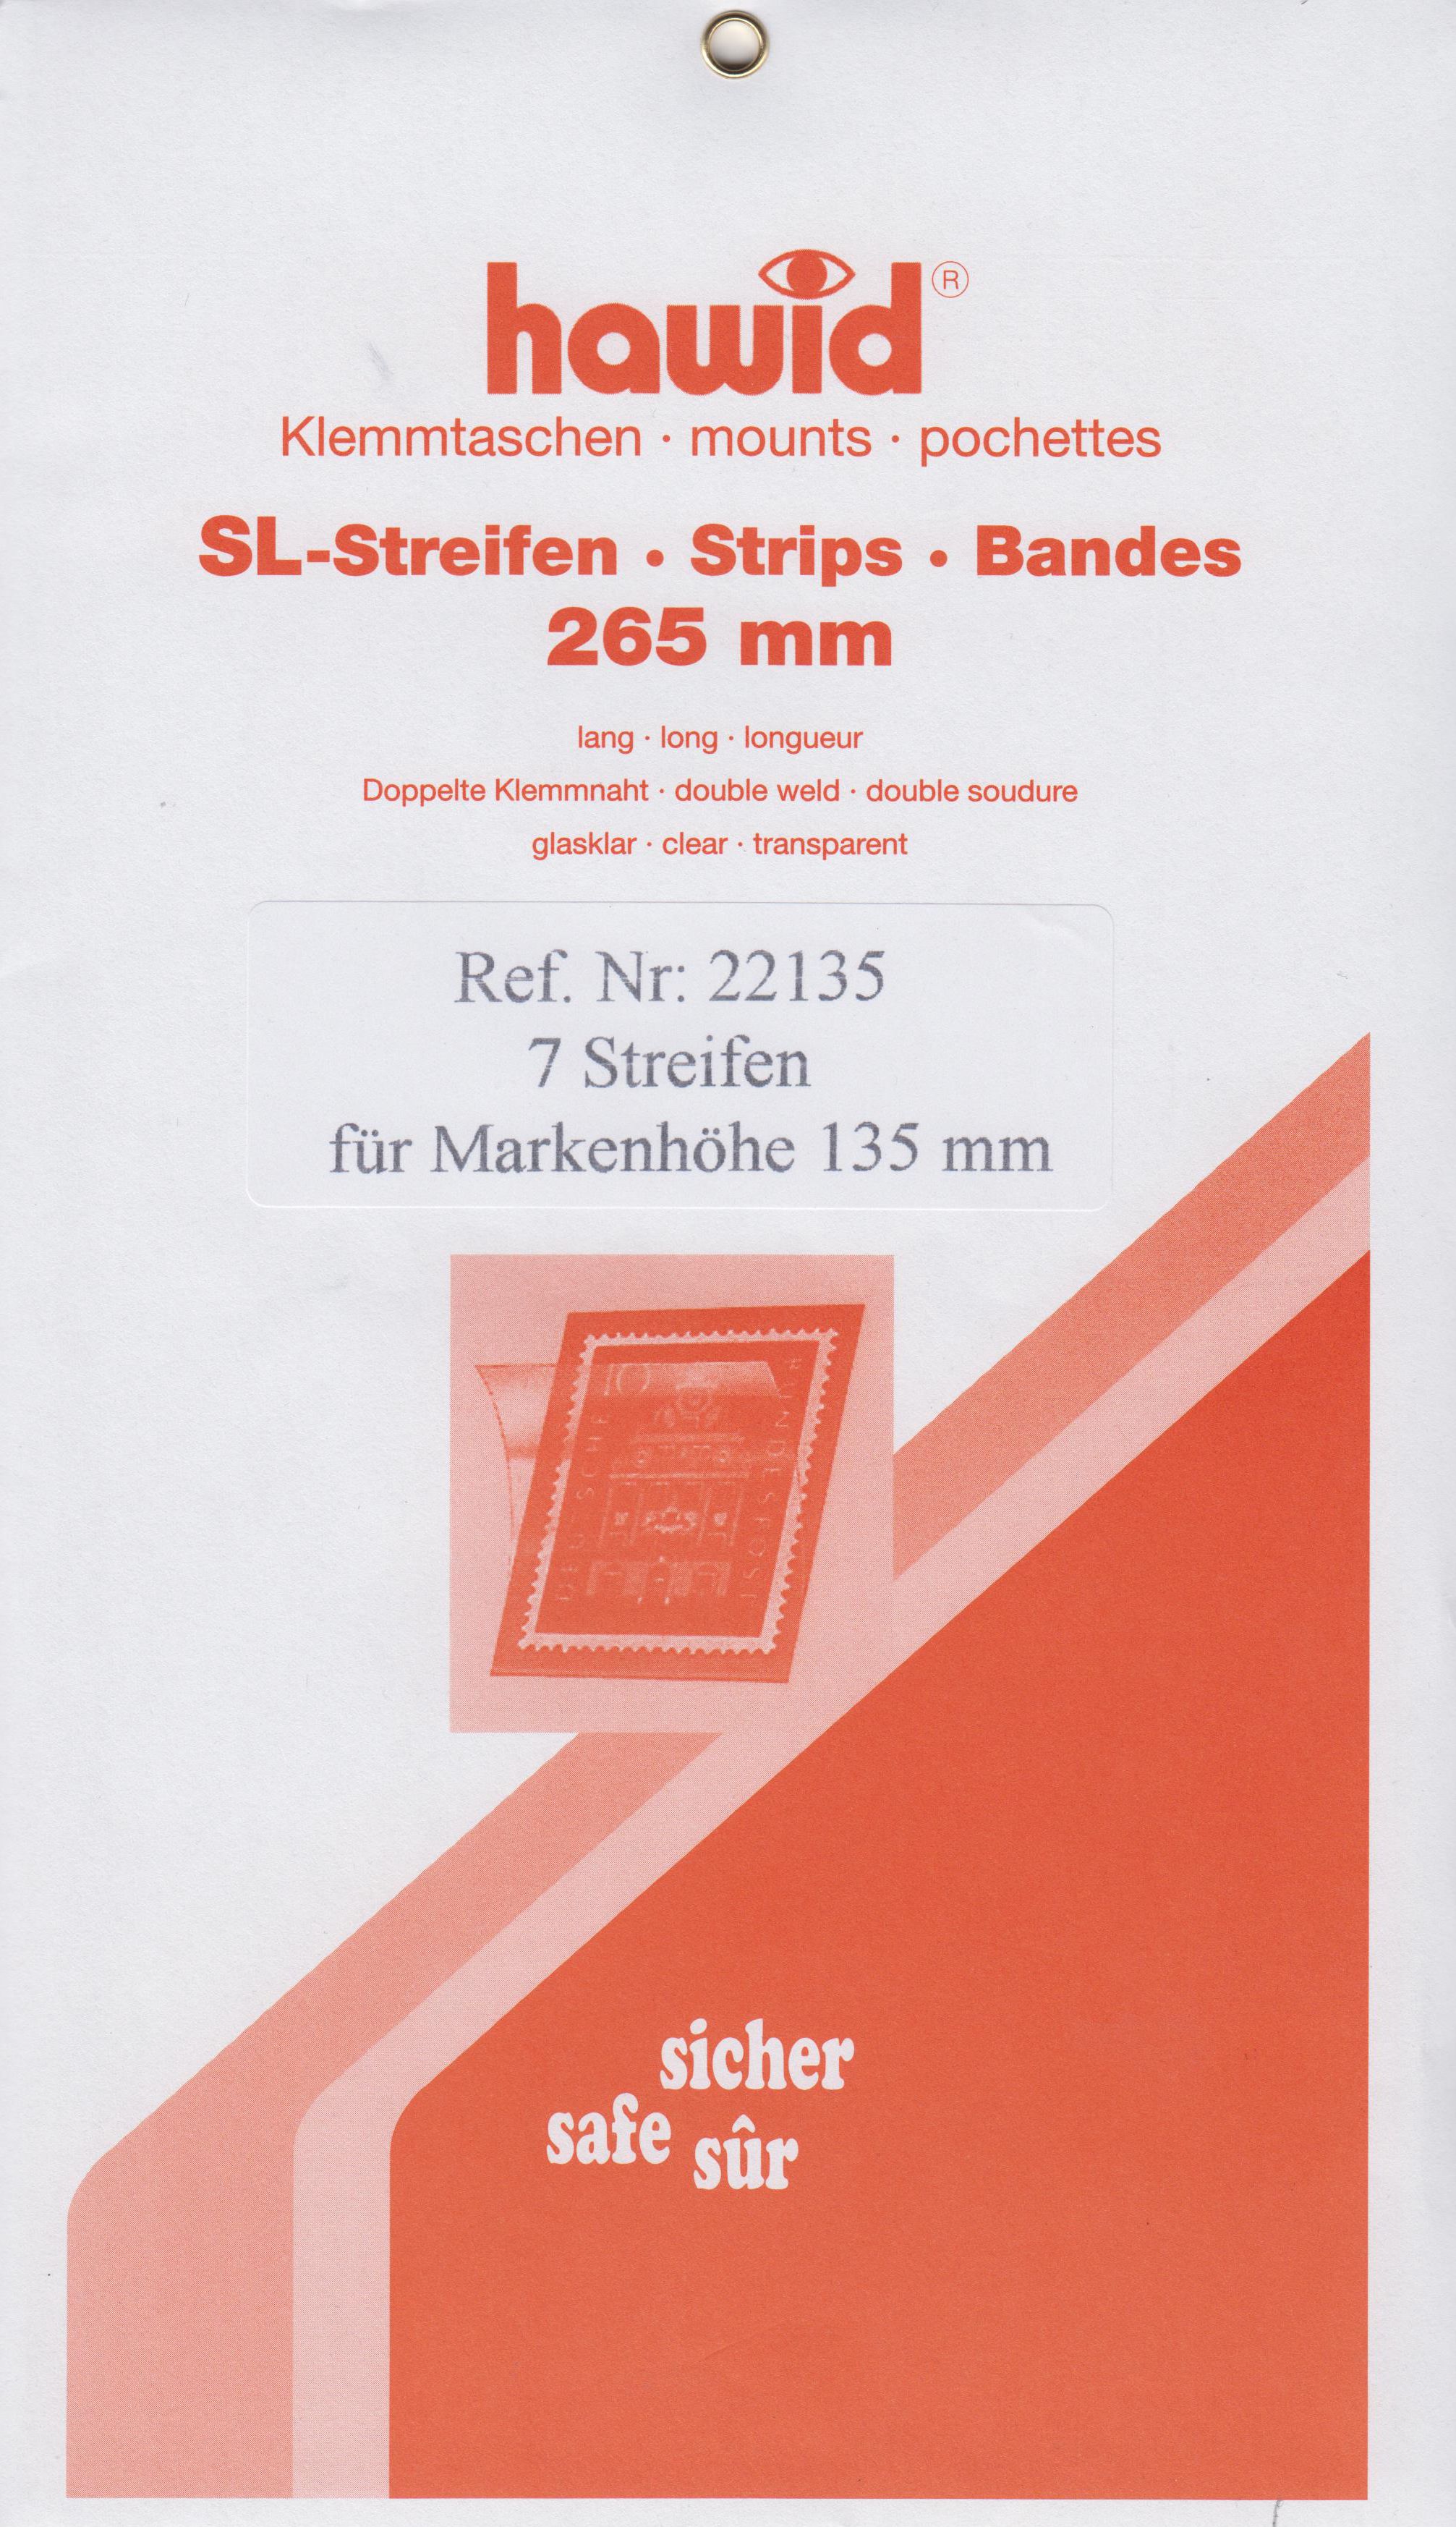 Hawid SL-Streifen Nr. 22135, 7 Streifen für Markenhöhe 135mm, glasklar